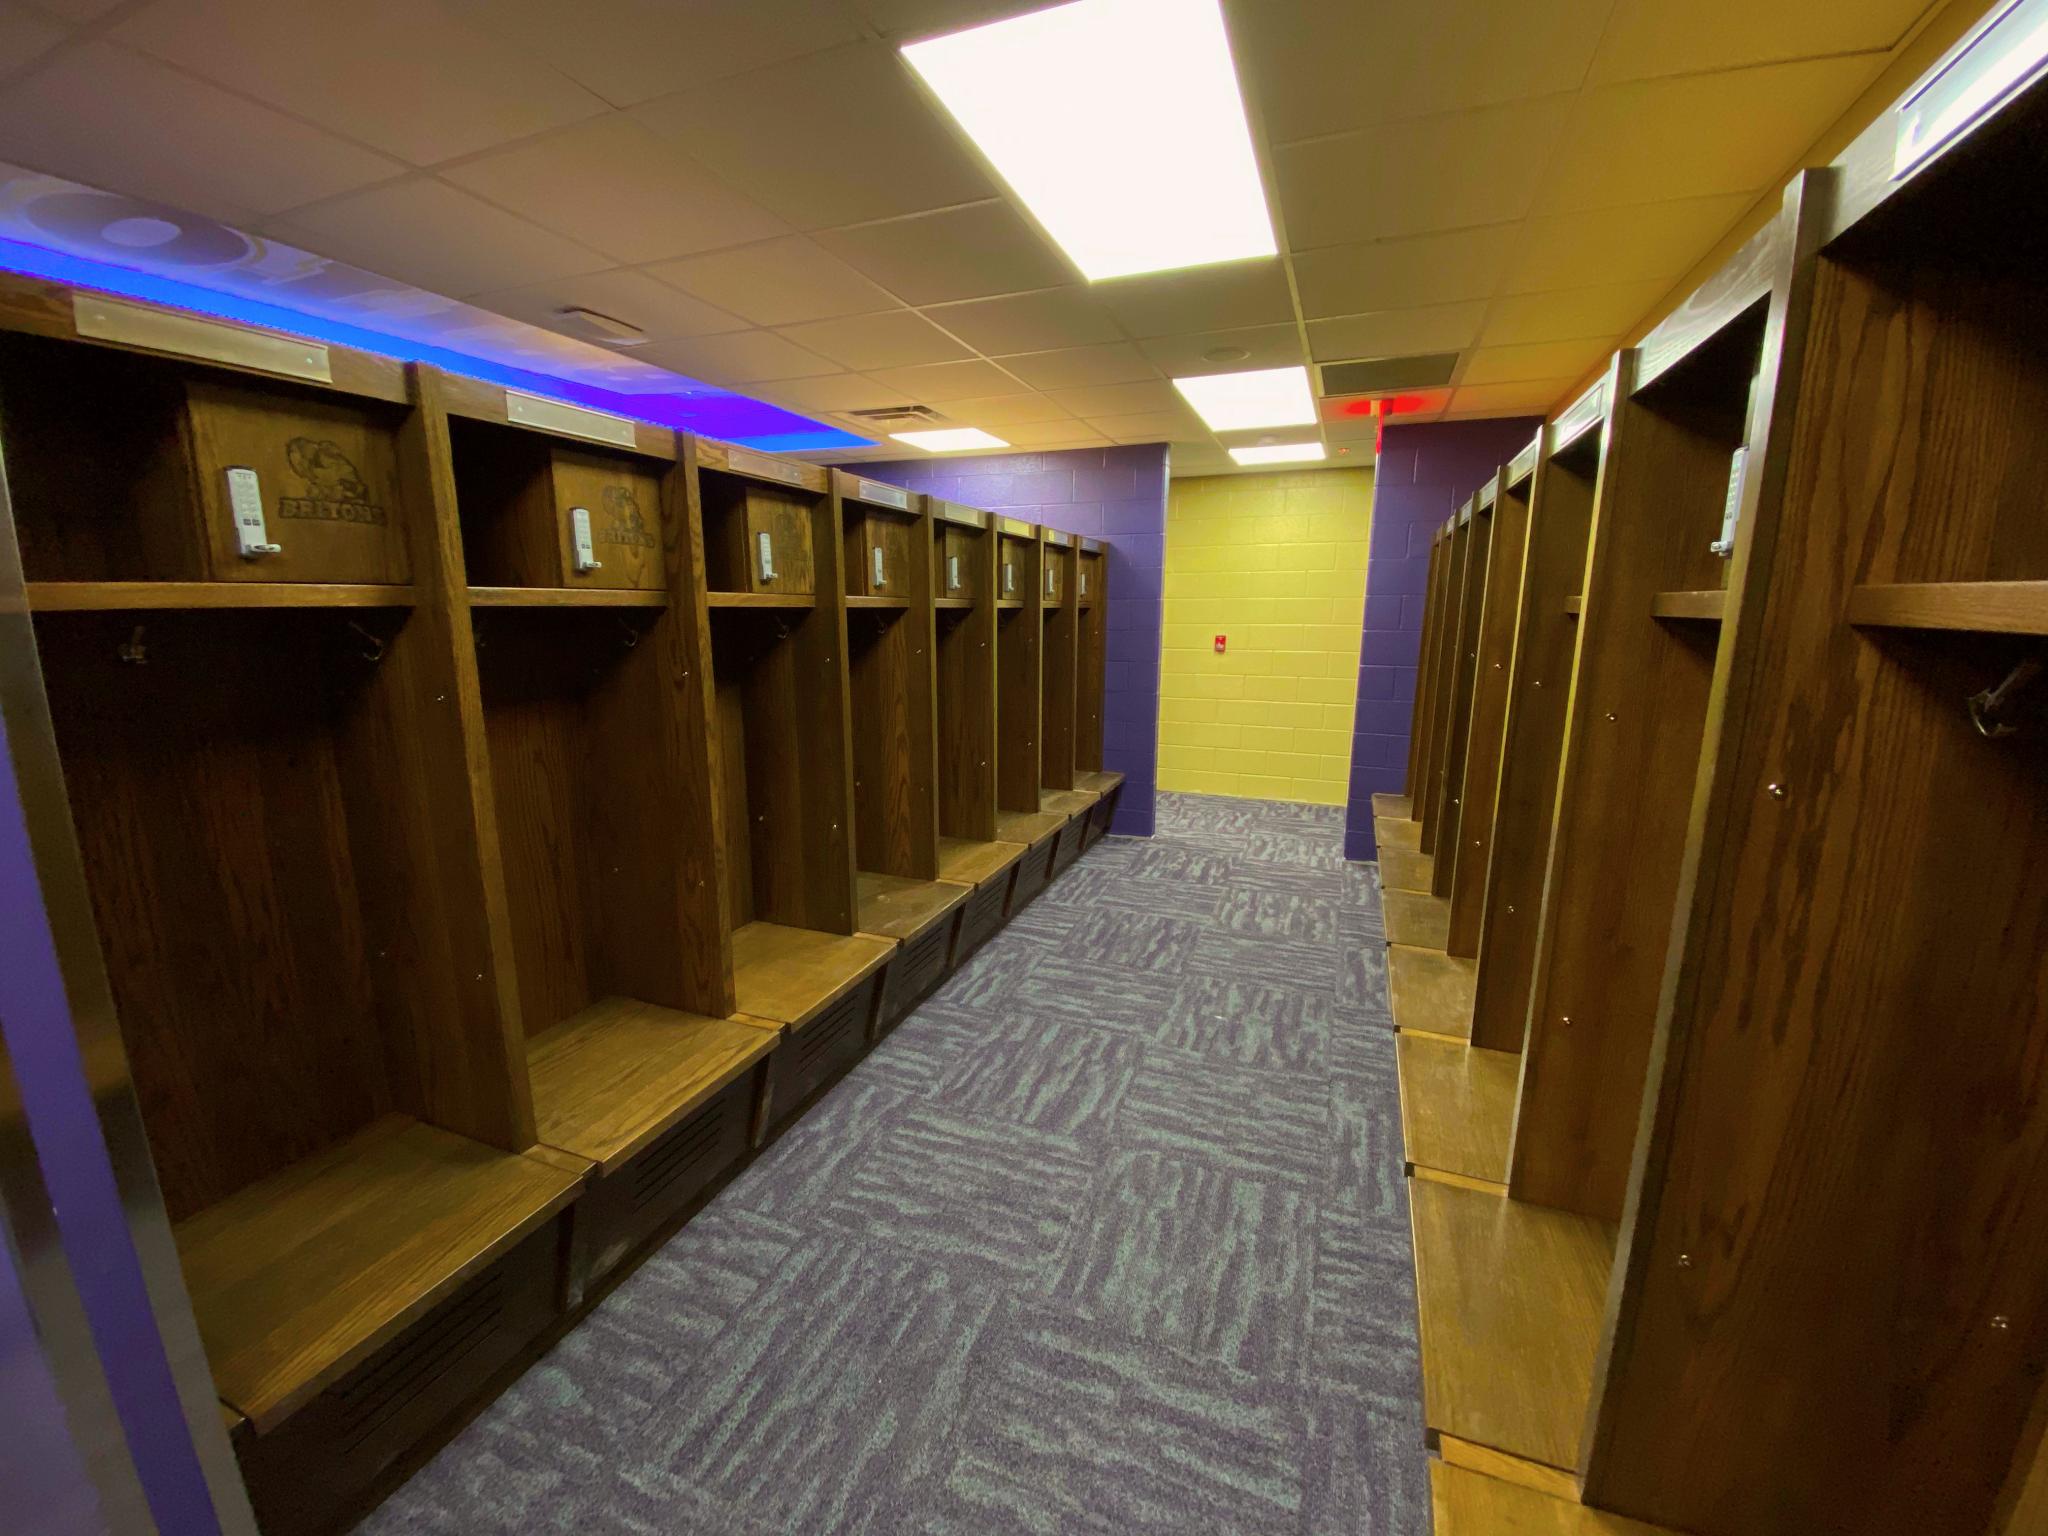 image of lane of wooden lockers